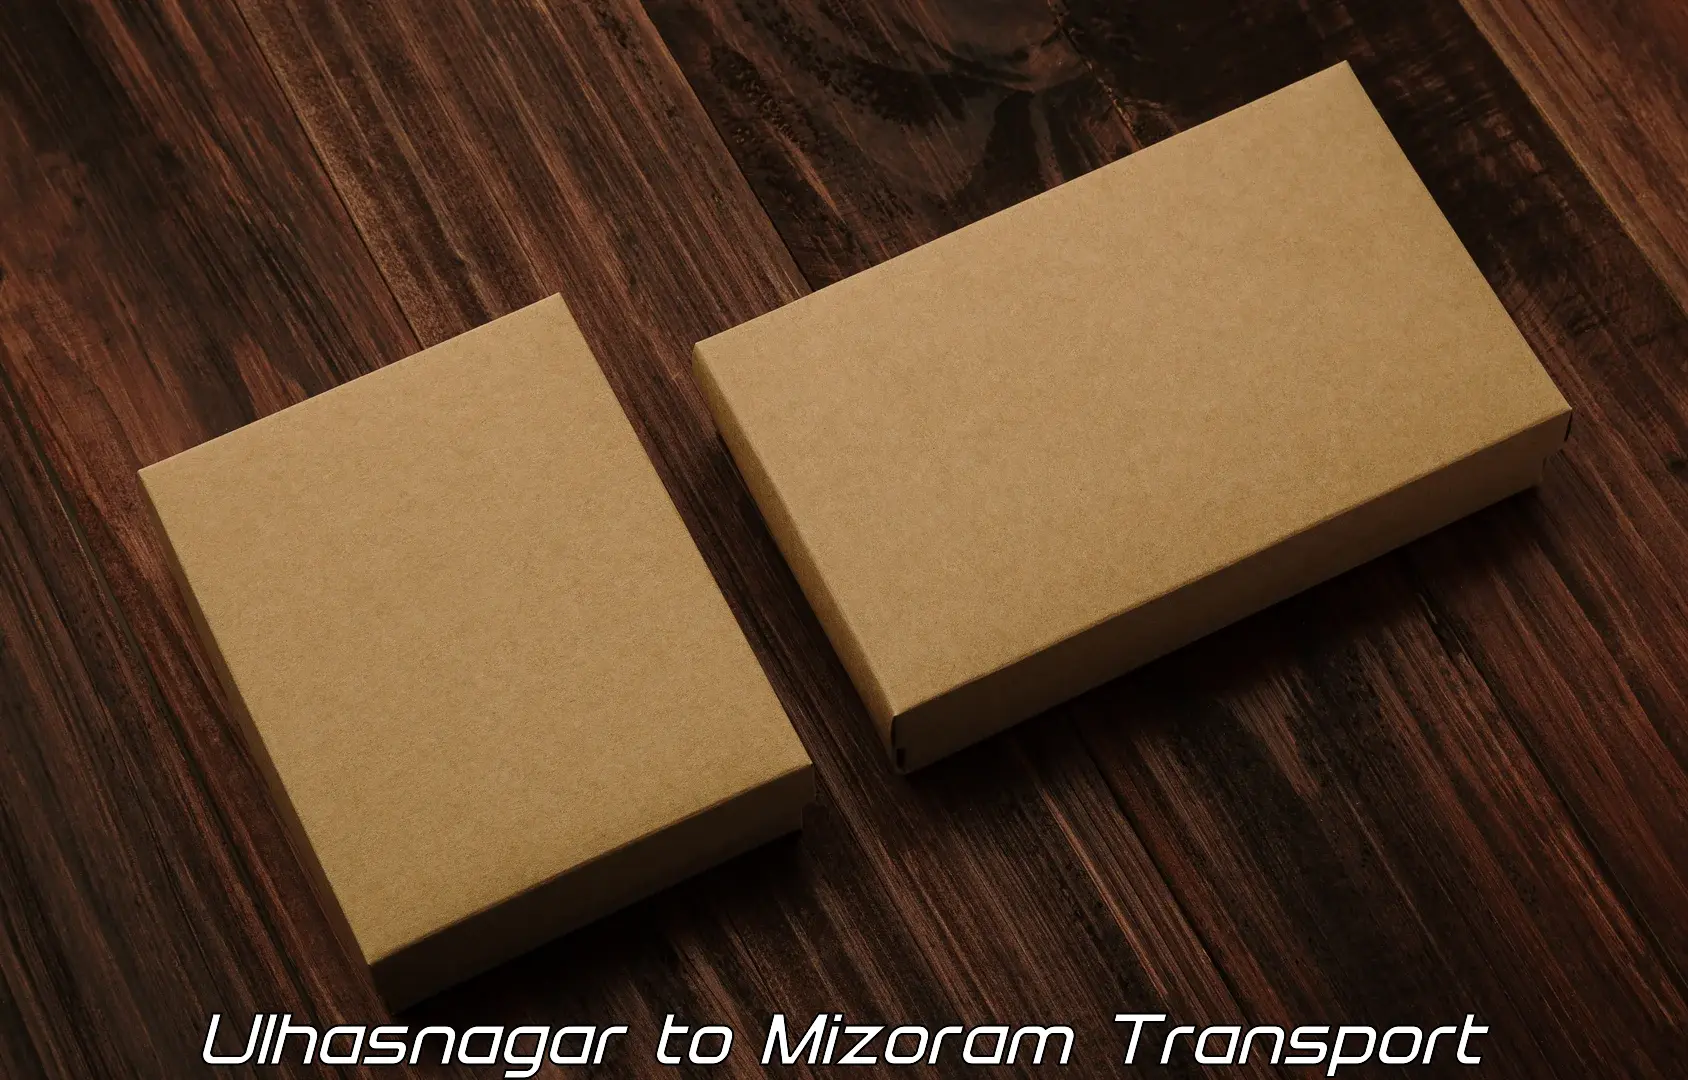 All India transport service Ulhasnagar to Mizoram